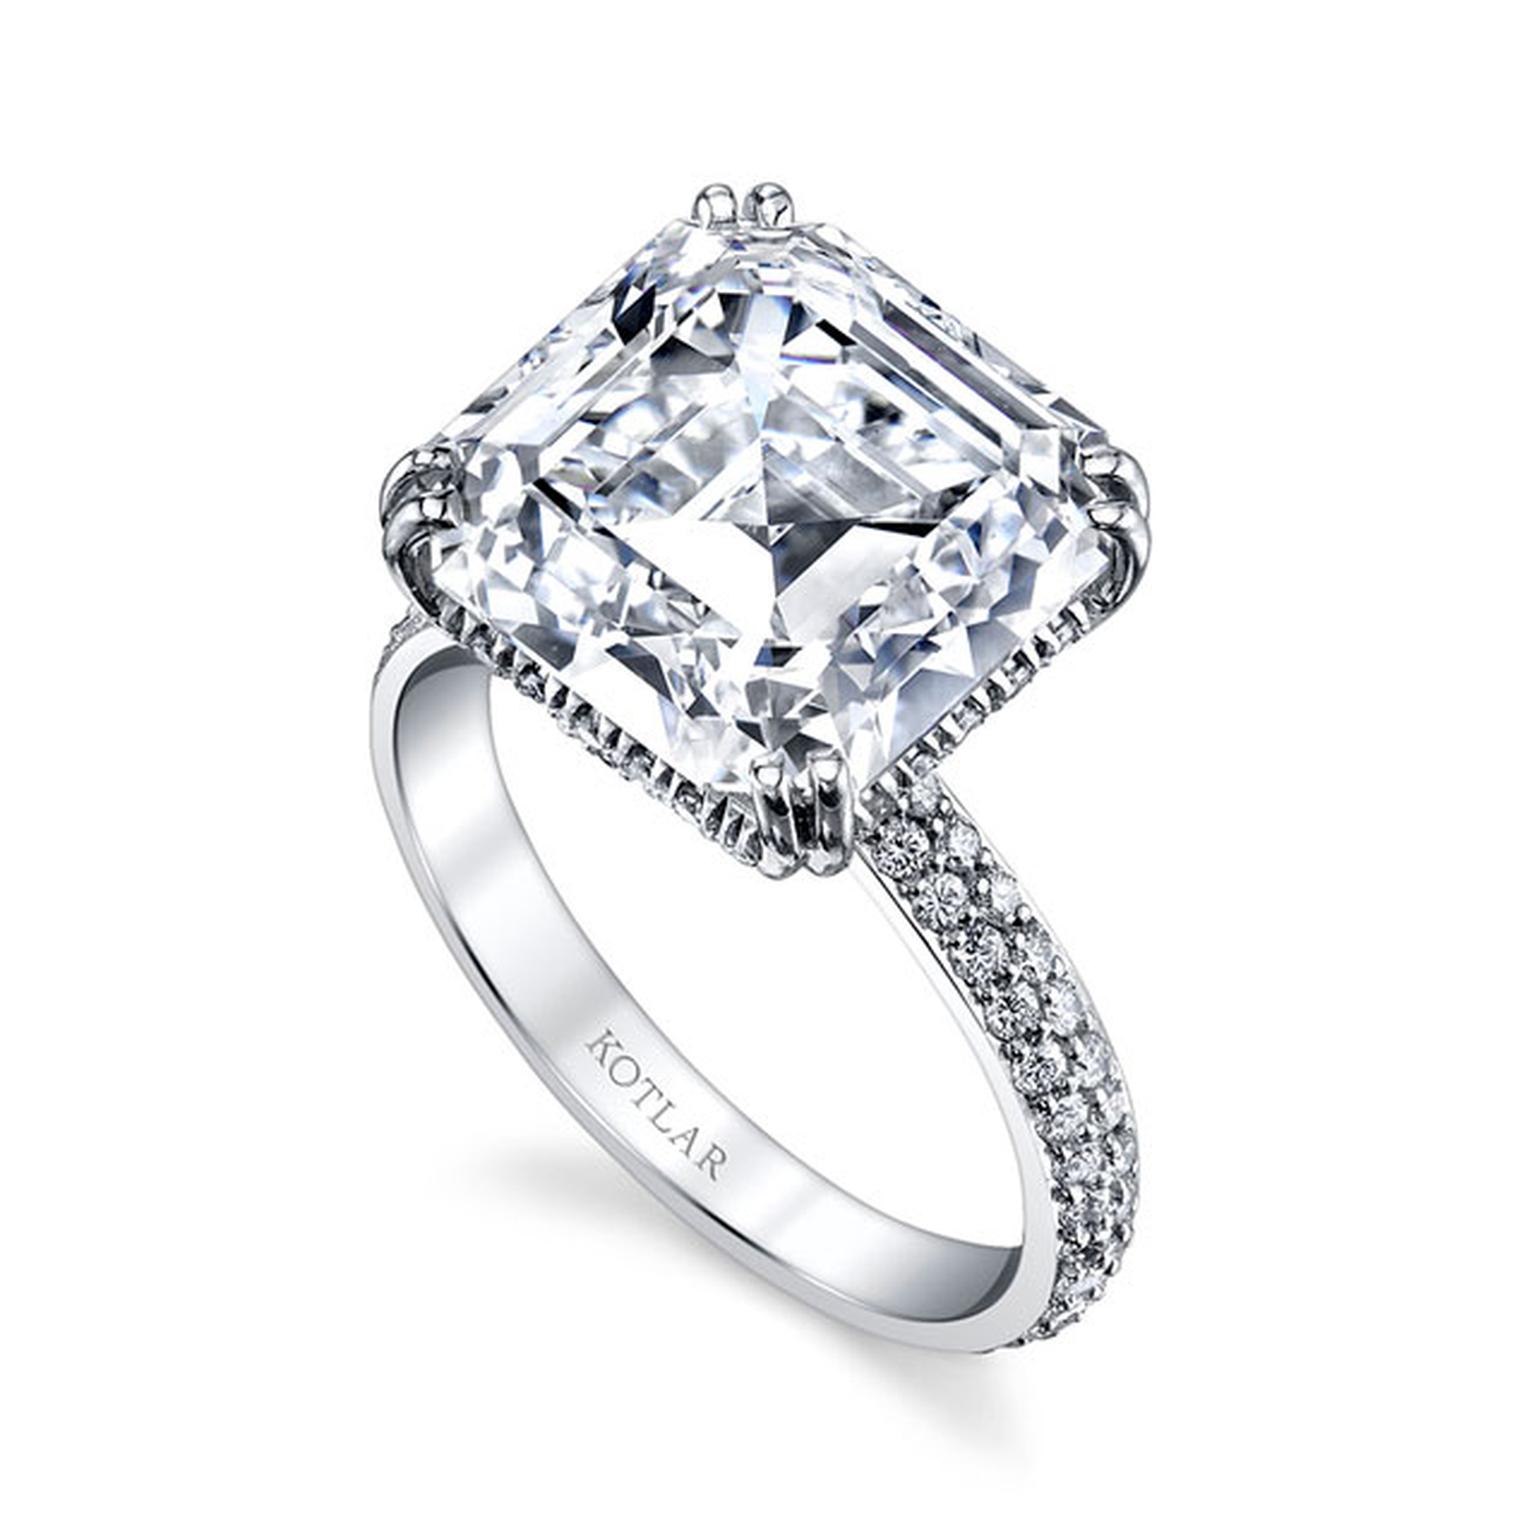 Harry Kotlar 8.81-carat Asscher cut diamond engagement ring